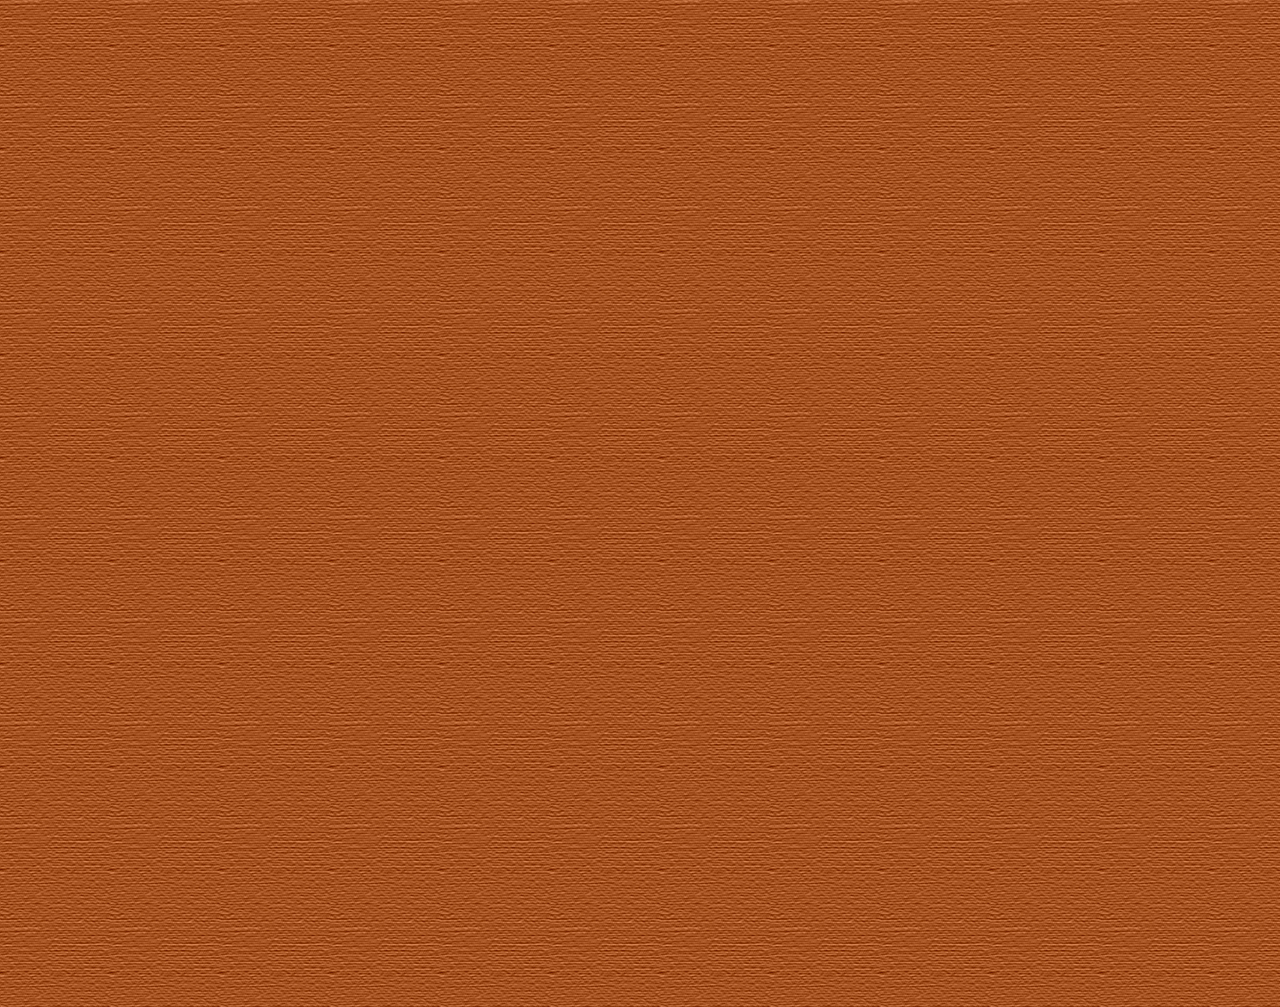 tan wallpaper,orange,brown,yellow,material property,peach